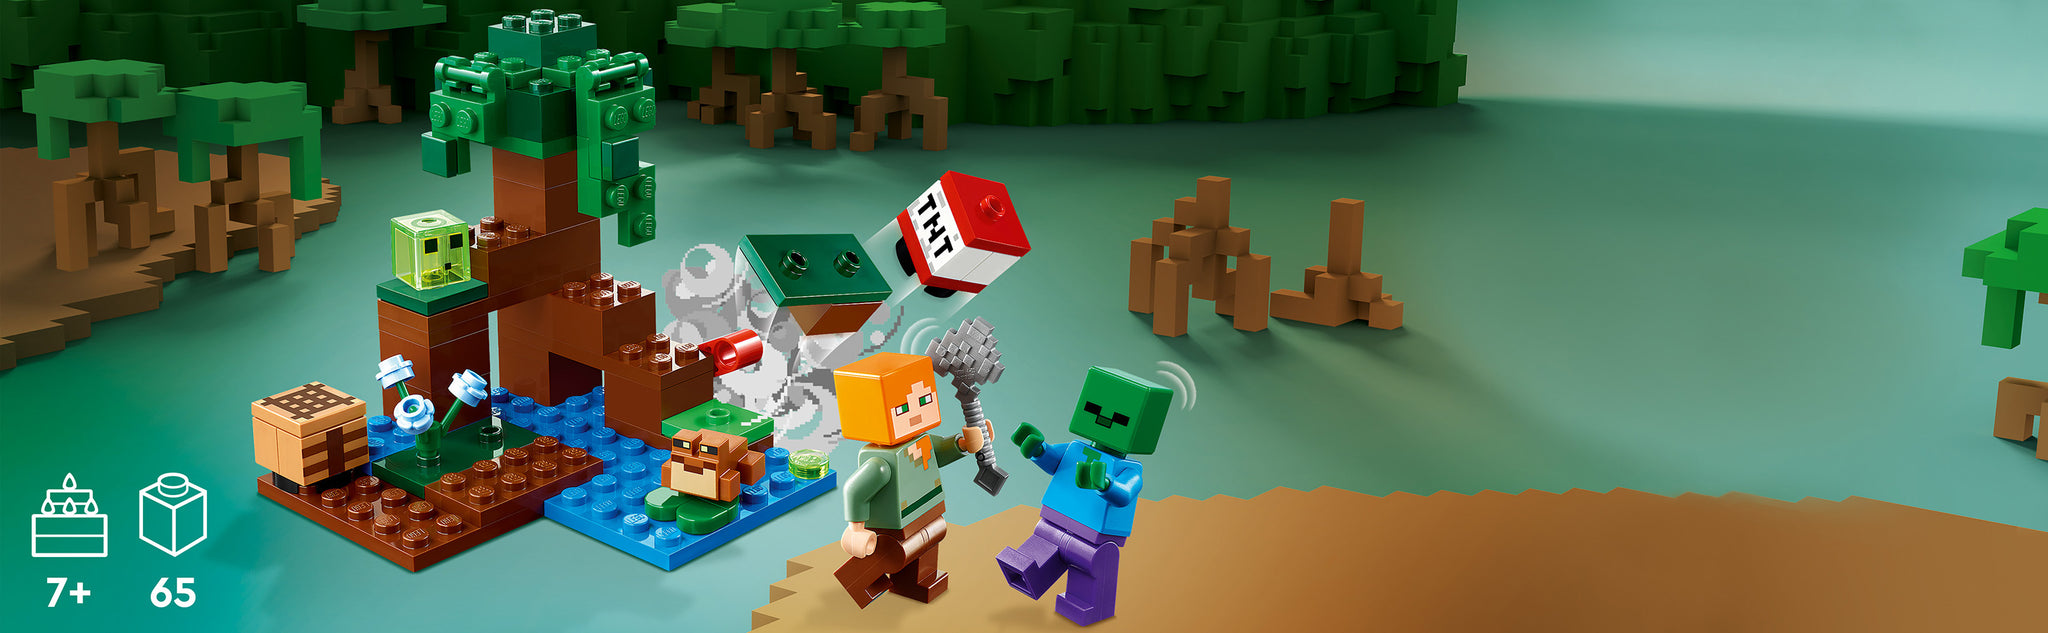 Überraschen Sie Minecraft®-Spieler ab 7 Jahren mit einem Sumpf voller Abenteuer, Action und Kreativität mit LEGO® Minecraft Das Sumpfabenteuer (21240). Superspaßiges Minecraft-Spielzeug zum Bauen und Erkunden. Geben Sie Kindern die Kreativität von Minecraft mit dieser physischen Version der gefährlichen Sumpflandschaft. Dieses vielseitige Spielzeug zeigt den Minecraft-Liebling Alex auf seiner Reise durch Schlamm und Mangroven auf einem Minecraft-Abenteuer. Neben kreativen Baumöglichkeiten gibt es zwei feindliche Mobs zu bekämpfen – einen Zombie und einen Schleim sowie einen freundlichen Frosch, der das Geschehen von einem Seerosenblatt aus beobachtet. Kinder helfen Alex, ihre Axt zu benutzen und einen Hebel zu betätigen, um TNT zur Explosion zu bringen und jeden Angriff abzuwehren. Für zusätzlichen digitalen Spaß verfügt die LEGO Builder-App über intuitive Zoom- und Drehfunktionen, mit denen Kinder ihr Modell beim Bauen visualisieren können. Kreatives Minecraft®-Spielset – LEGO® Minecraft Das Sumpfabenteuer (21240) stellt den Mangrovensumpf des Spiels nach und bietet jede Menge Möglichkeiten, kreativ zu bauen und spannende Konfrontationen im Rollenspiel zu spielen. Bekannte Charaktere – darunter die Minecraft®-Lieblinge Alex, ein Zombie, ein Schleimblock und ein Frosch in einer Sumpflandschaft, komplett mit Mangrovenbaum, Werkbank, Axt und explodierender TNT-Funktion. Viele Spieloptionen – Kinder können TNT bauen, erkunden, bekämpfen und zur Detonation bringen, während sie feindliche Mobs im gefährlichen Mangrovensumpf abwehren. Tolles Geschenk für Kinder – Überraschung Minecraft®-Spieler ab 7 Jahren erhalten diese physische Version des aufregenden Sumpfes des Spiels zum Geburtstag, zu den Feiertagen oder zu jedem anderen Anlass. Auch für unterwegs – dieses kompakte Set ist über 8 cm hoch und 9 cm hoch. breit und 8 cm tief und bietet verschiedene Spielmöglichkeiten. Interaktives digitales Bauen – die LEGO® Builder-App verfügt über intuitive Zoom- und Drehfunktionen, die es Kindern ermöglichen, ihr Modell zu visualisieren, während sie es bauen. Minecraft® im echten Leben – mit LEGO® Minecraft-Sets, Kinder erleben das beliebte Spiel auf eine andere Art und Weise mit Mobs, Umgebungen und Funktionen, die mit LEGO-Steinen zum Leben erweckt werden. Garantierte Qualität – LEGO®-Teile erfüllen strenge Qualitätsstandards, sodass sie einheitlich, kompatibel und einfach zusammenzubauen sind. Sicherheit geht vor – LEGO®-Teile werden fallengelassen , erhitzt, zerkleinert, gedreht und analysiert, um sicherzustellen, dass sie strengen globalen Sicherheitsstandards entsprechen